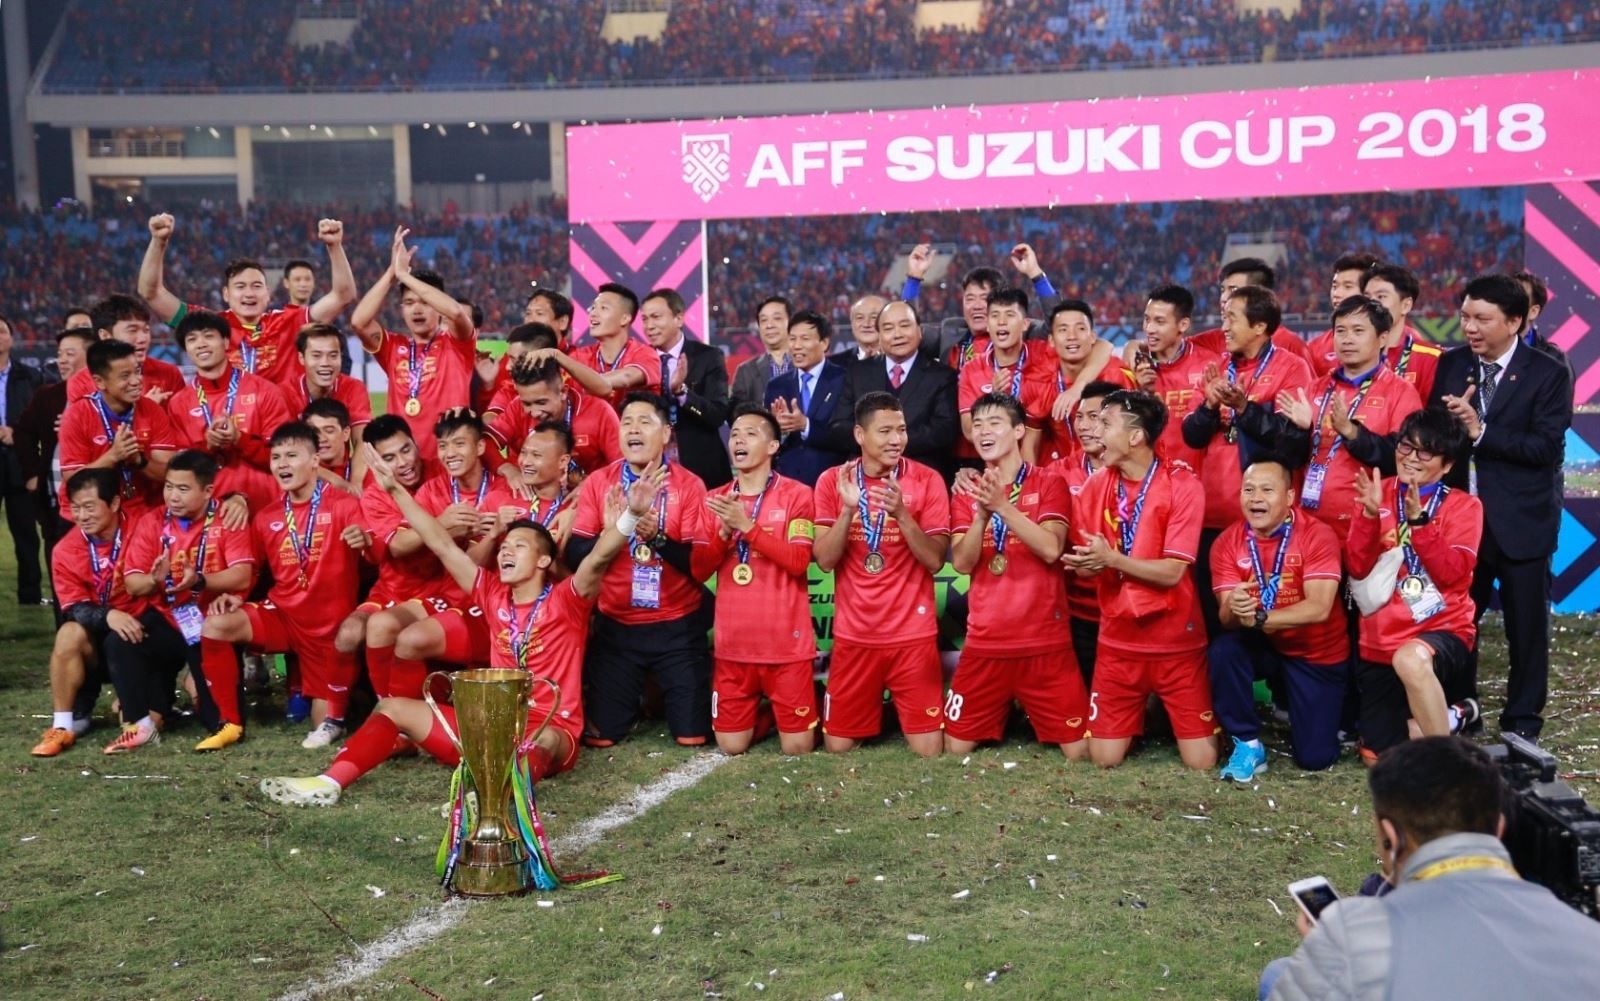 Đội tuyển Việt Nam đã vô địch sau những trận đấu hấp dẫn và đầy kịch tính. Hãy cùng xem hình ảnh để cảm nhận được niềm vui, sự tự hào và lòng trân trọng mà đội tuyển đã dành cho những người hâm mộ và đất nước.